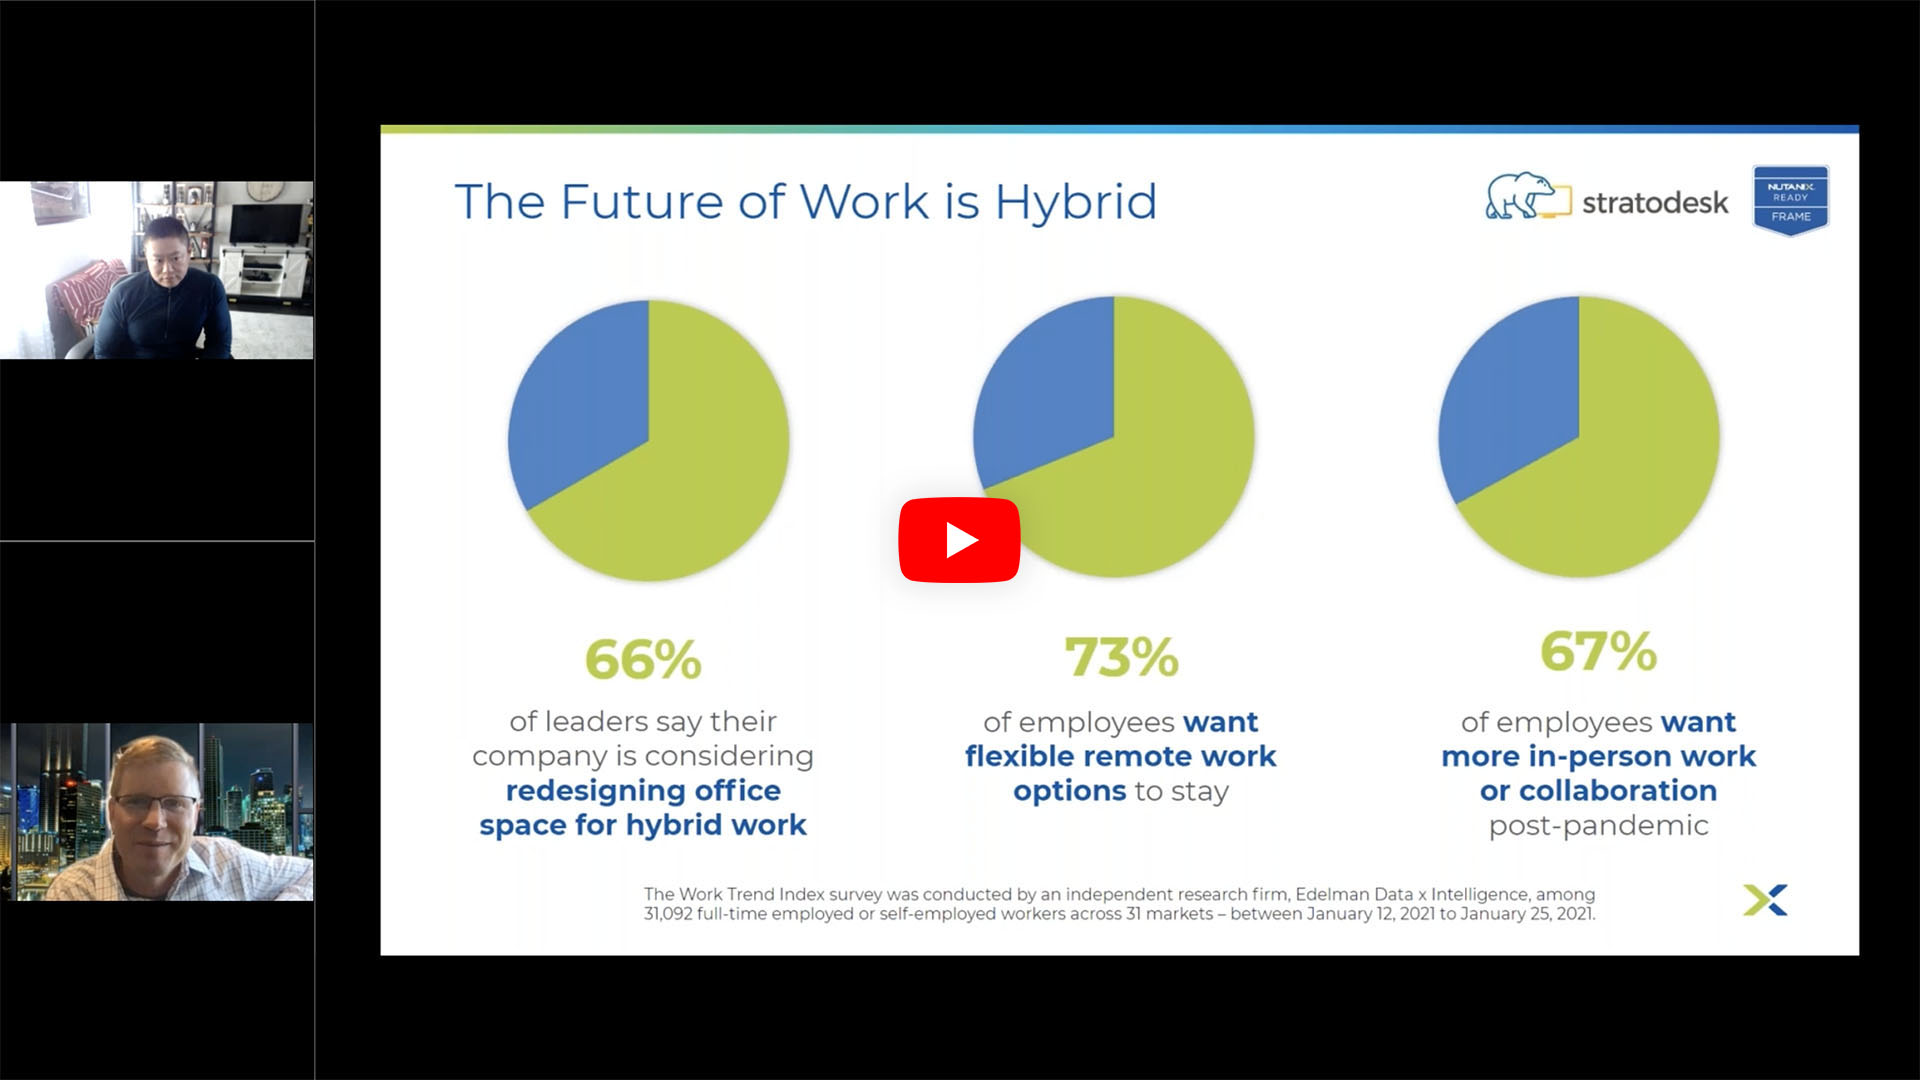 Bonus TechTalk with Nutanix - The Future of Work is Hybrid